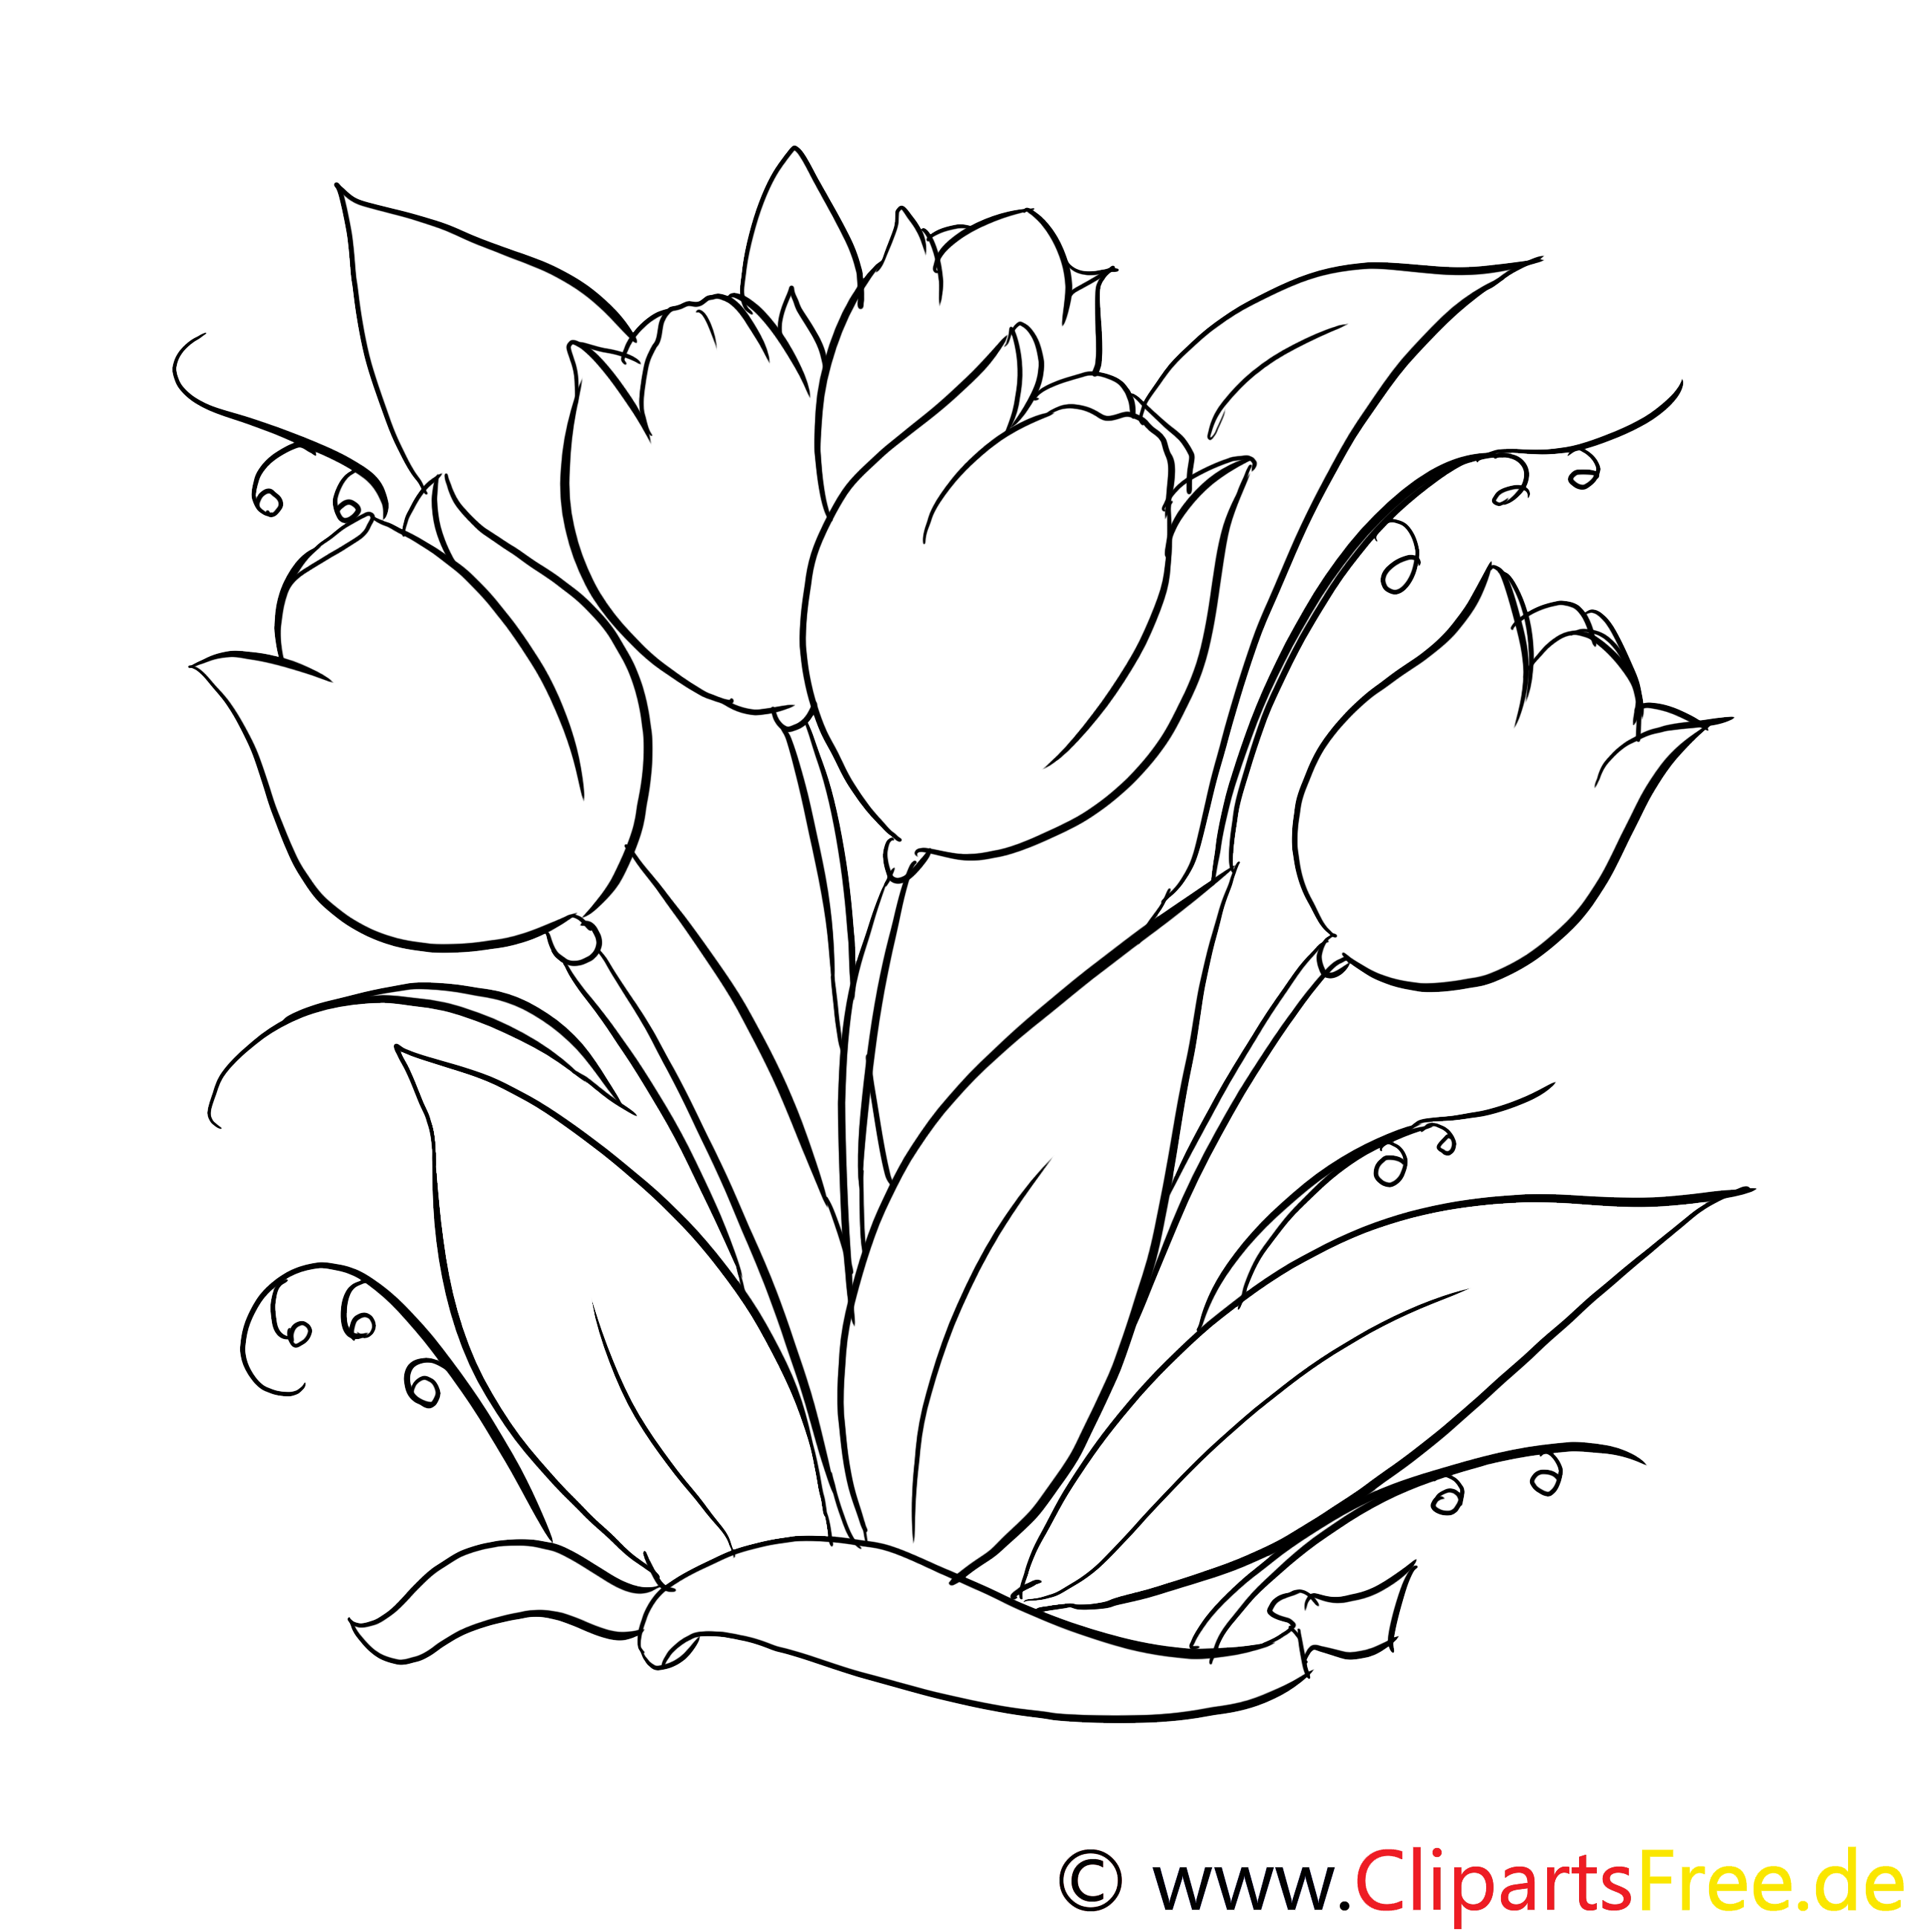 Coloriage de tulipes gratuit